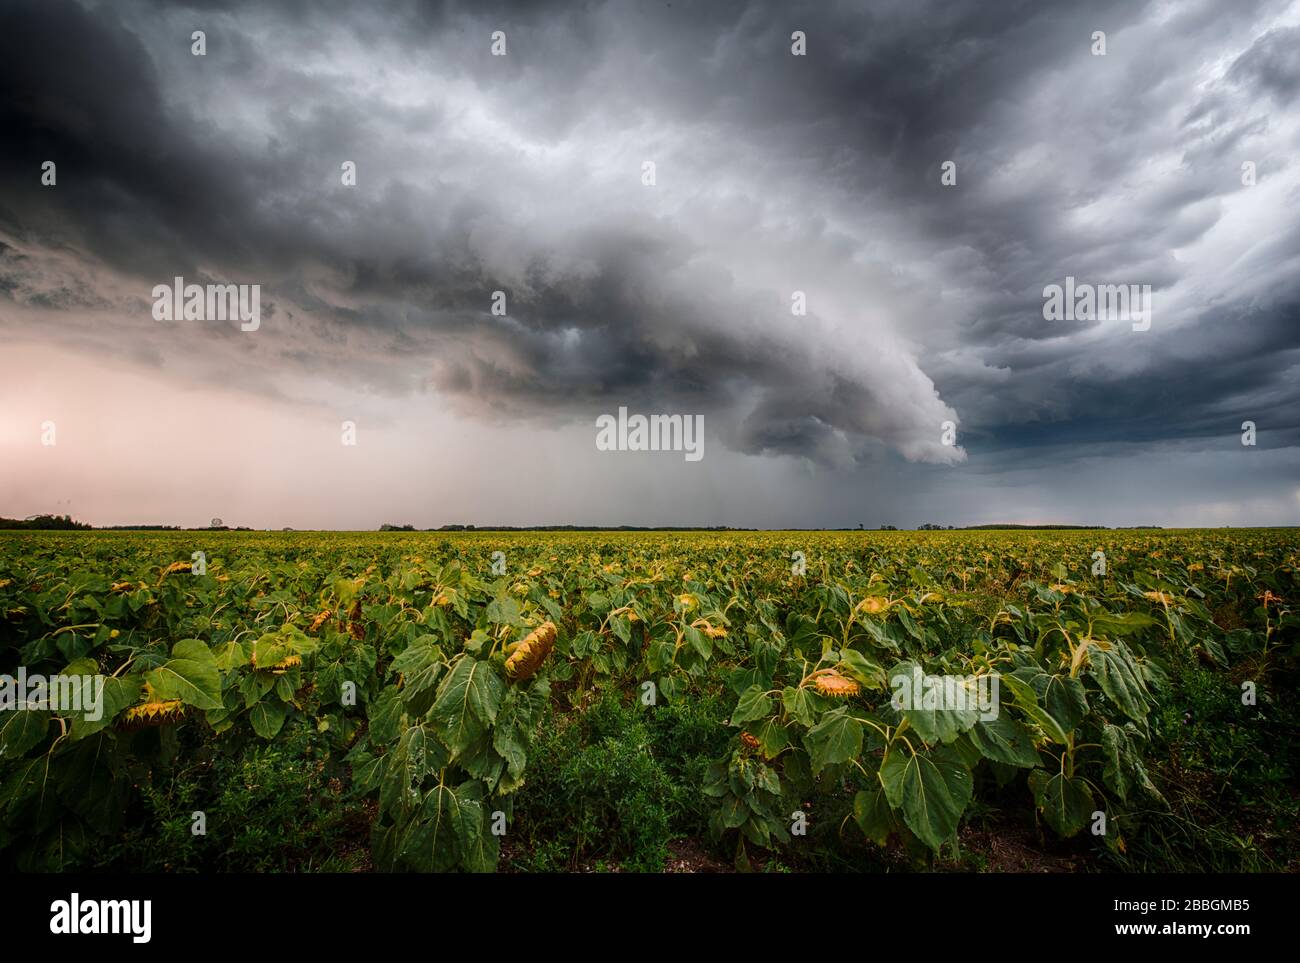 Sturm bildet eine Regalwolke über dem ländlichen Sonnenblumenfeld im Süden Manitobas Kanadas Stockfoto